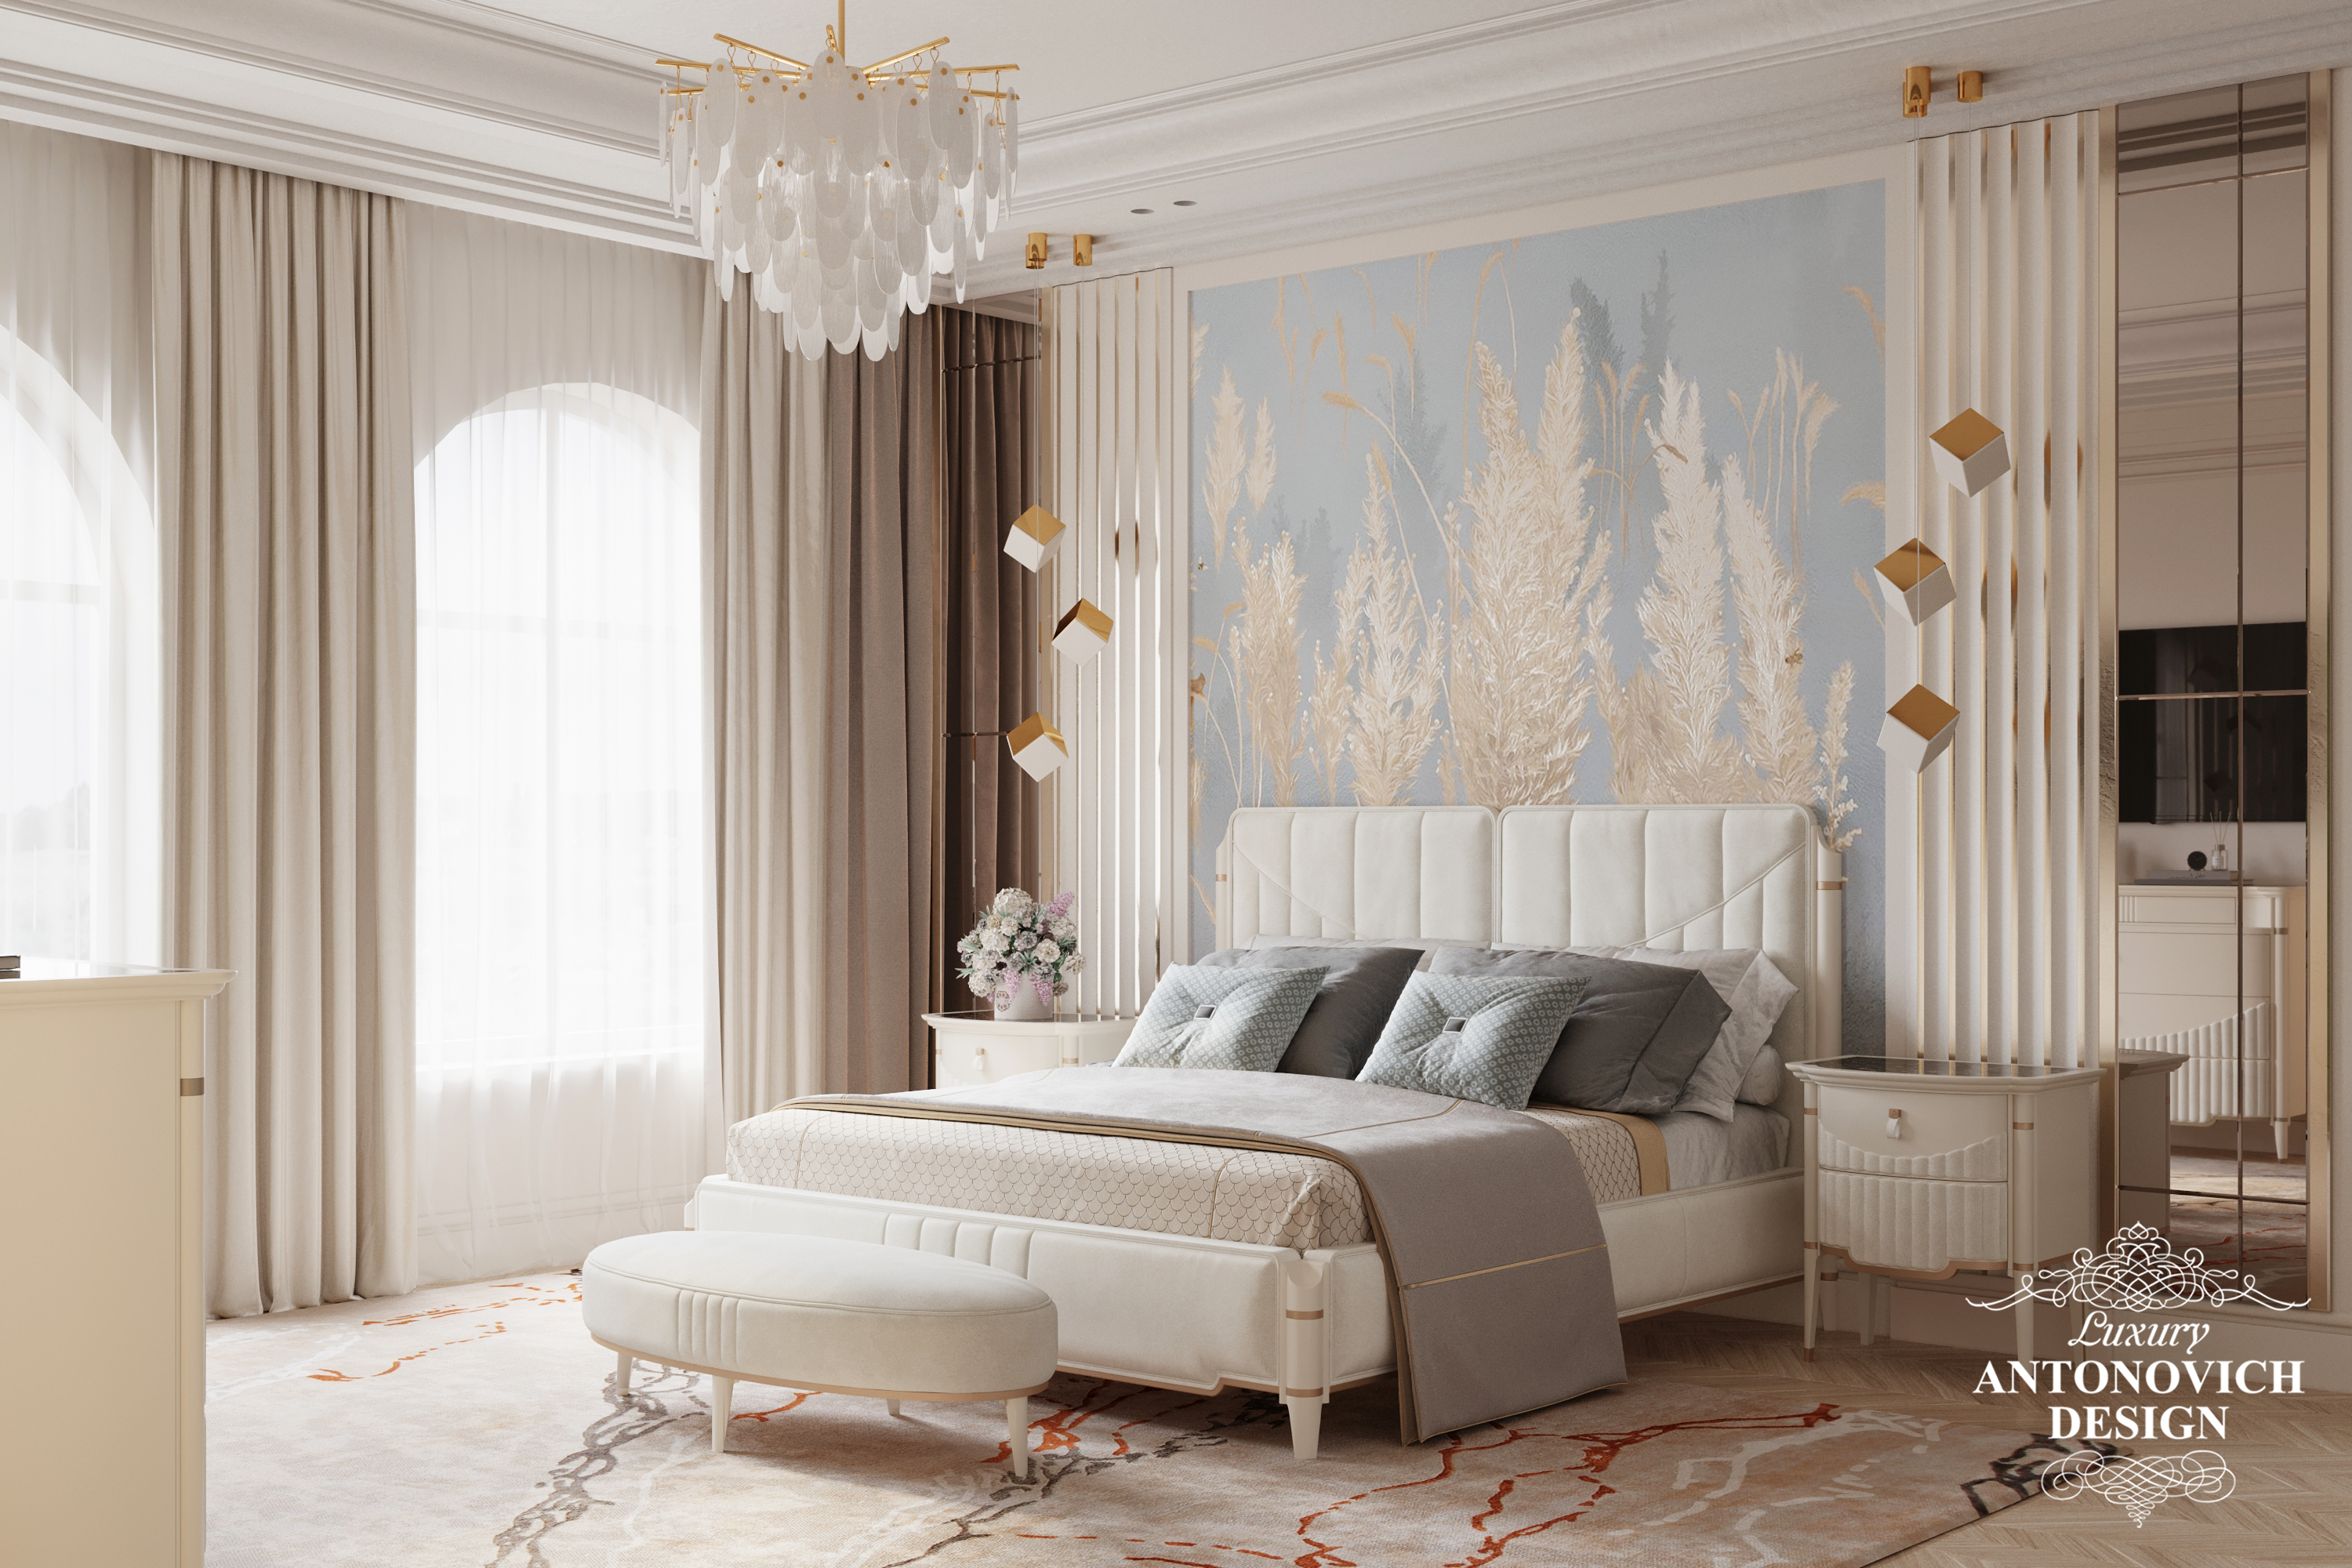 Дизайн женской спальни в современном стиле с фреской небесно-голубого оттенка. Дизайн коттеджей в Киеве